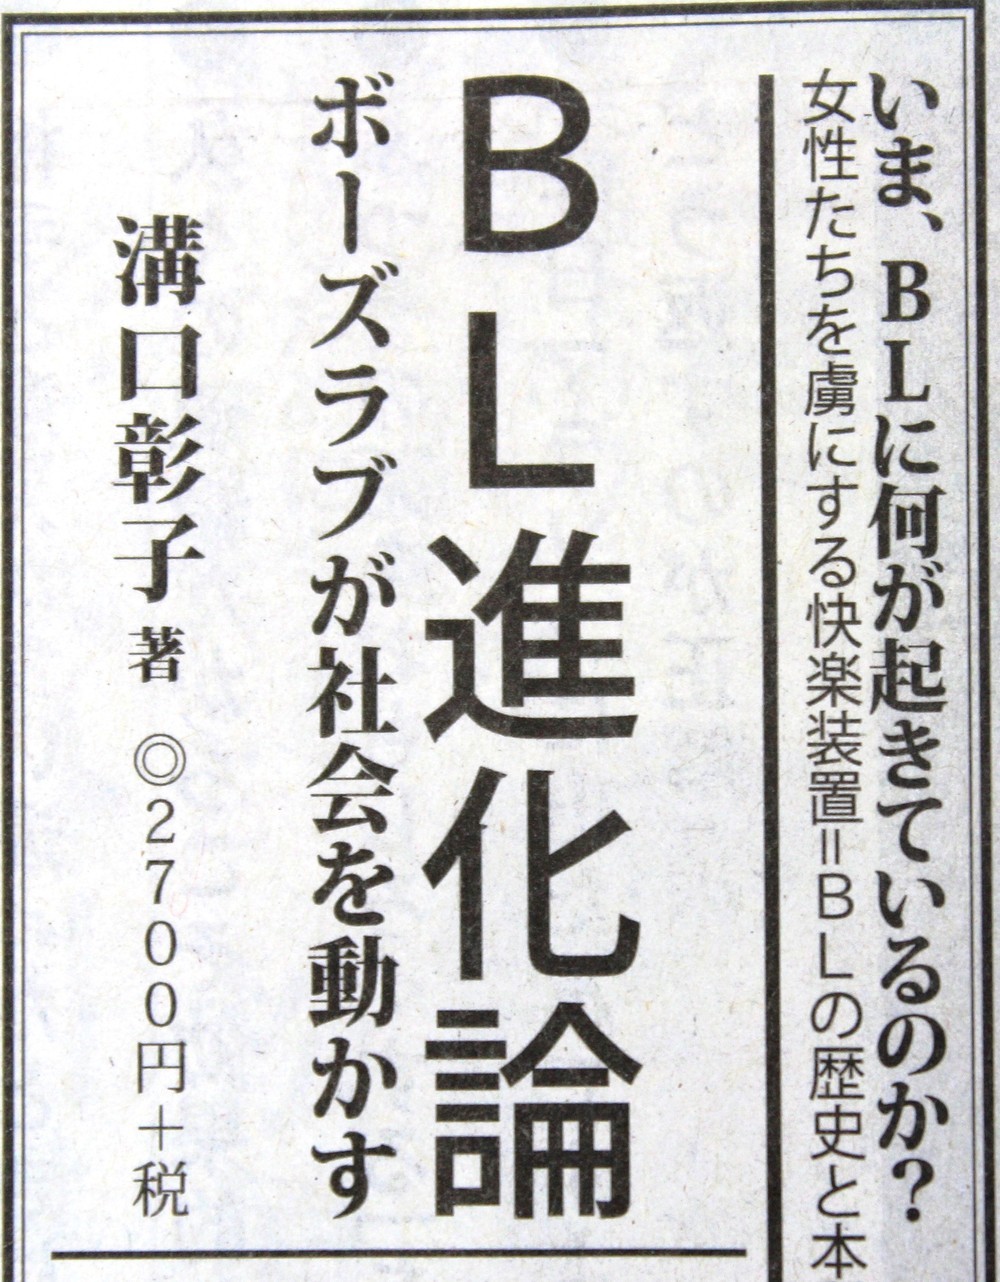 あの太田出版が新聞広告で痛いミス　「ボーイズラブ」を「ボーズラブ」と誤記